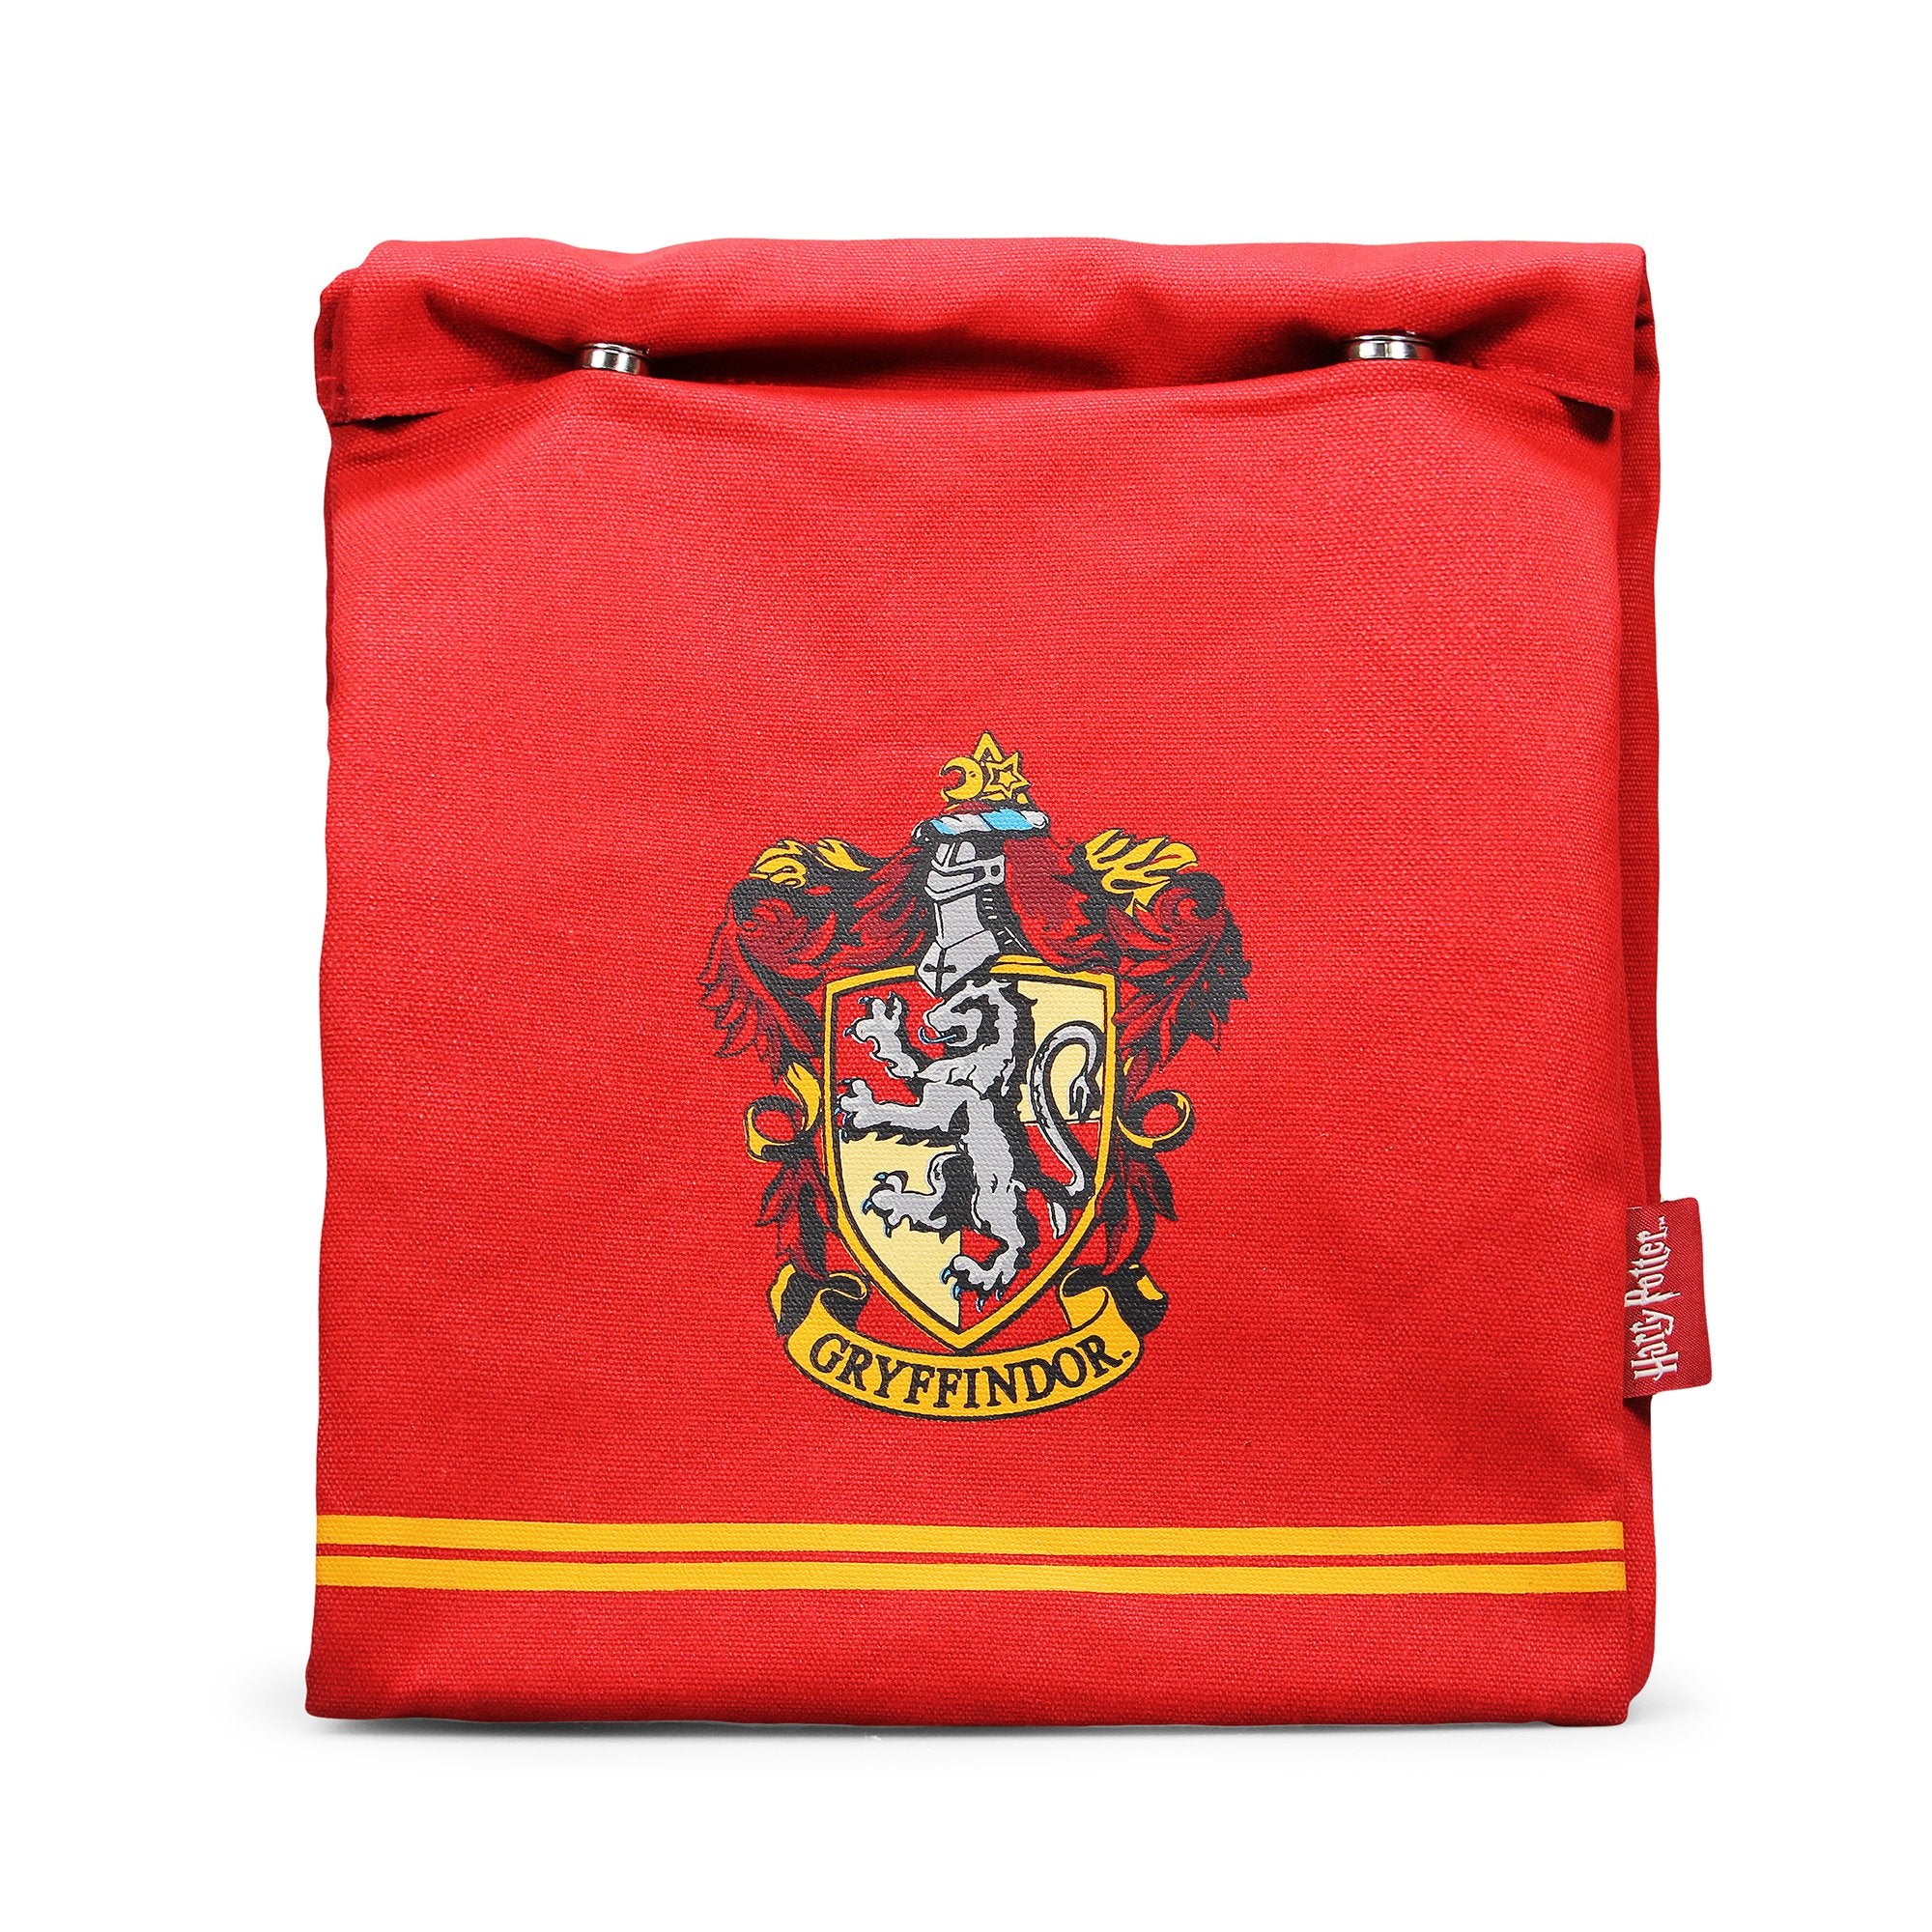 Harry Potter Lunch Bag - Gryffindor